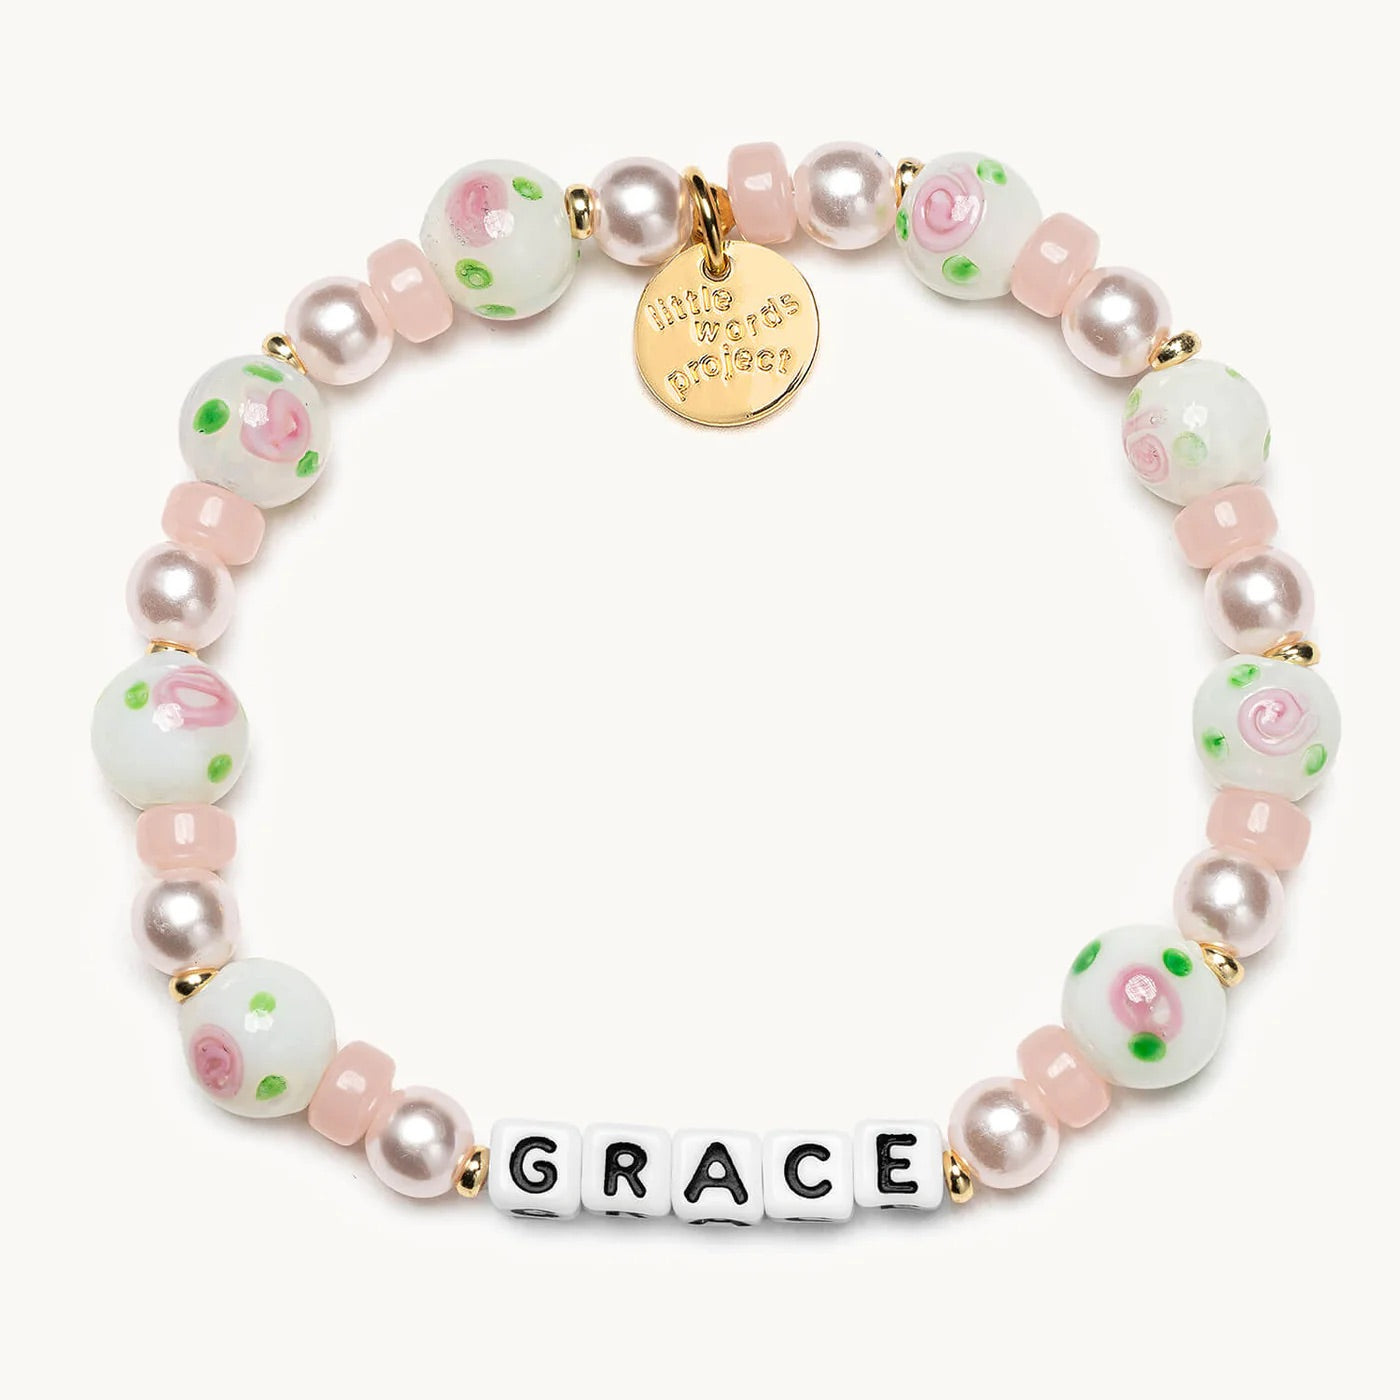 Lovestruck / Grace Little Words Project Beaded Bracelet